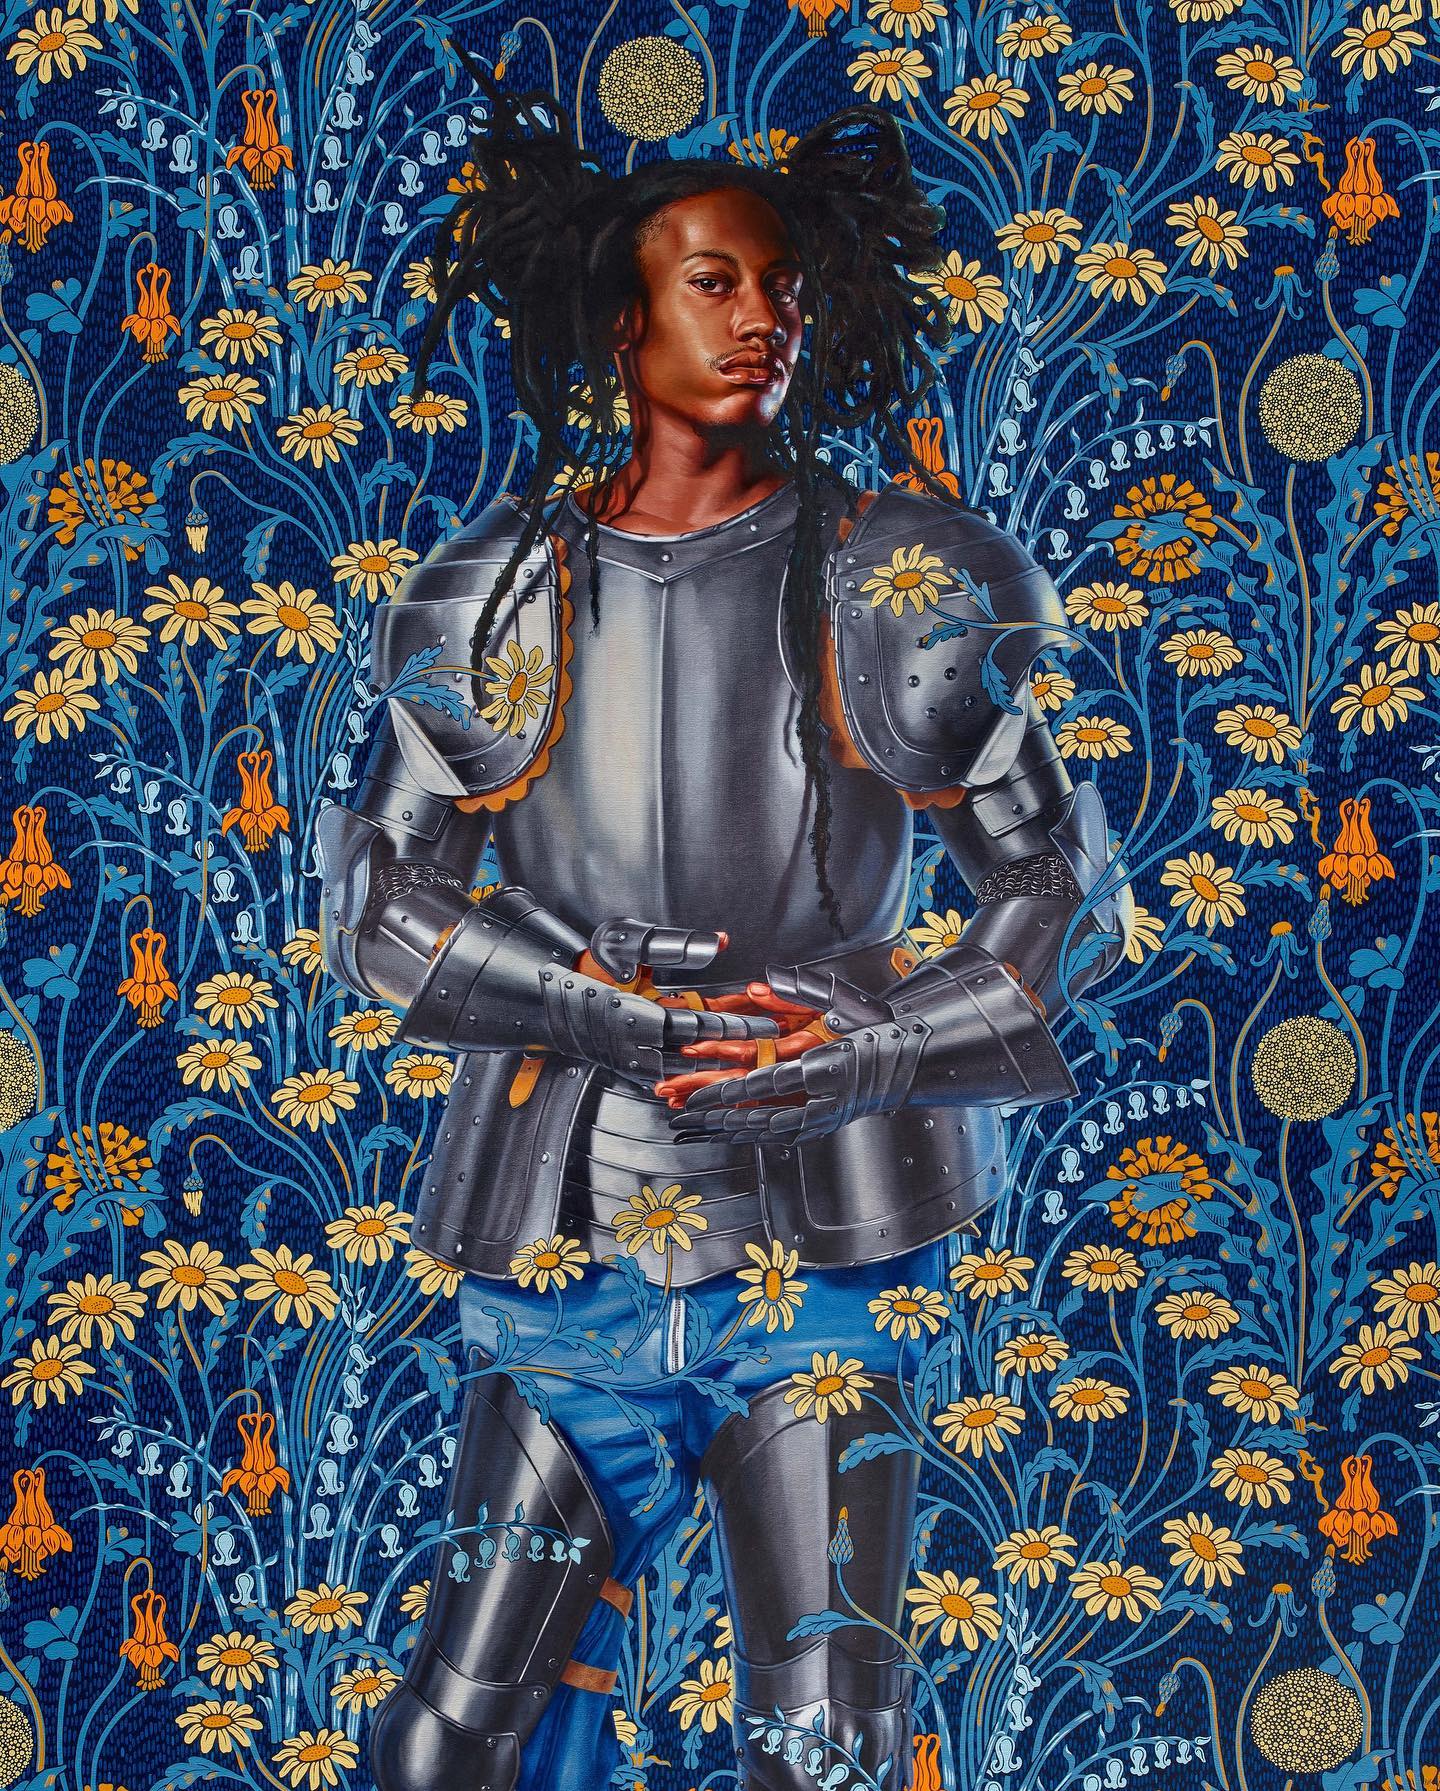 Oeuvre très colorées de l'artiste Kehinde Wiley